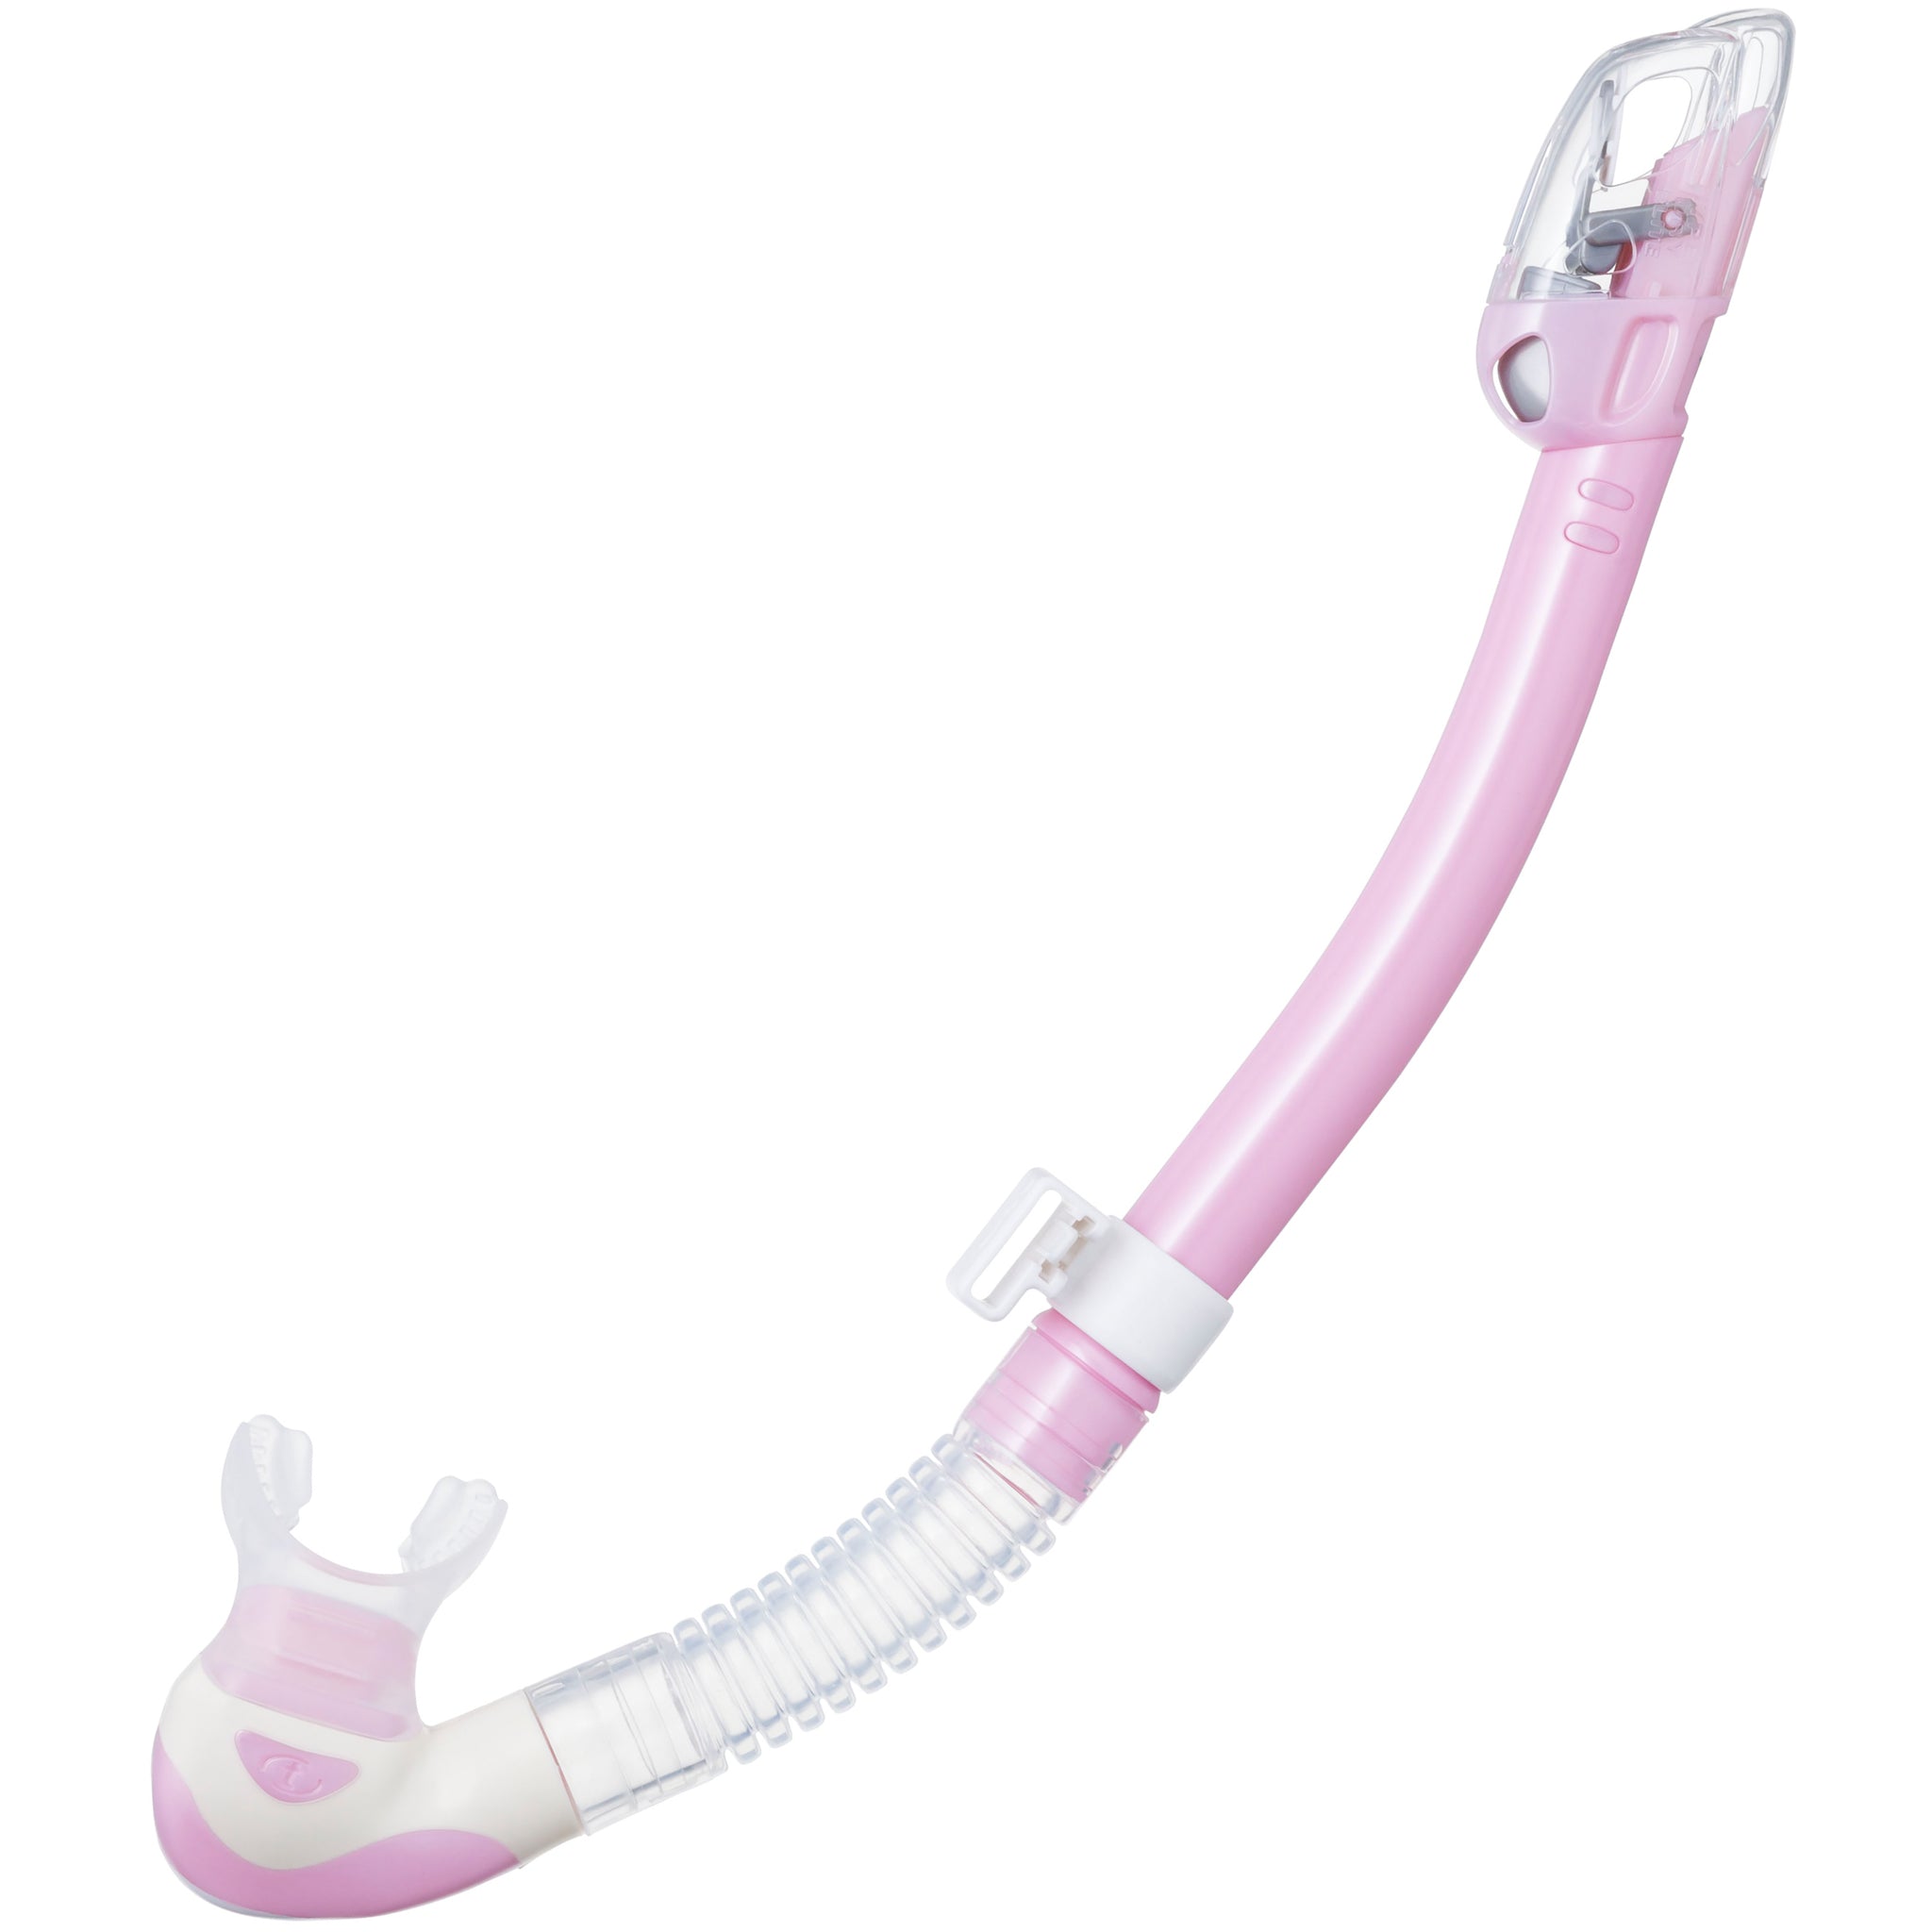 Tusa Hyperdry Elite II Dry Snorkel | Pink